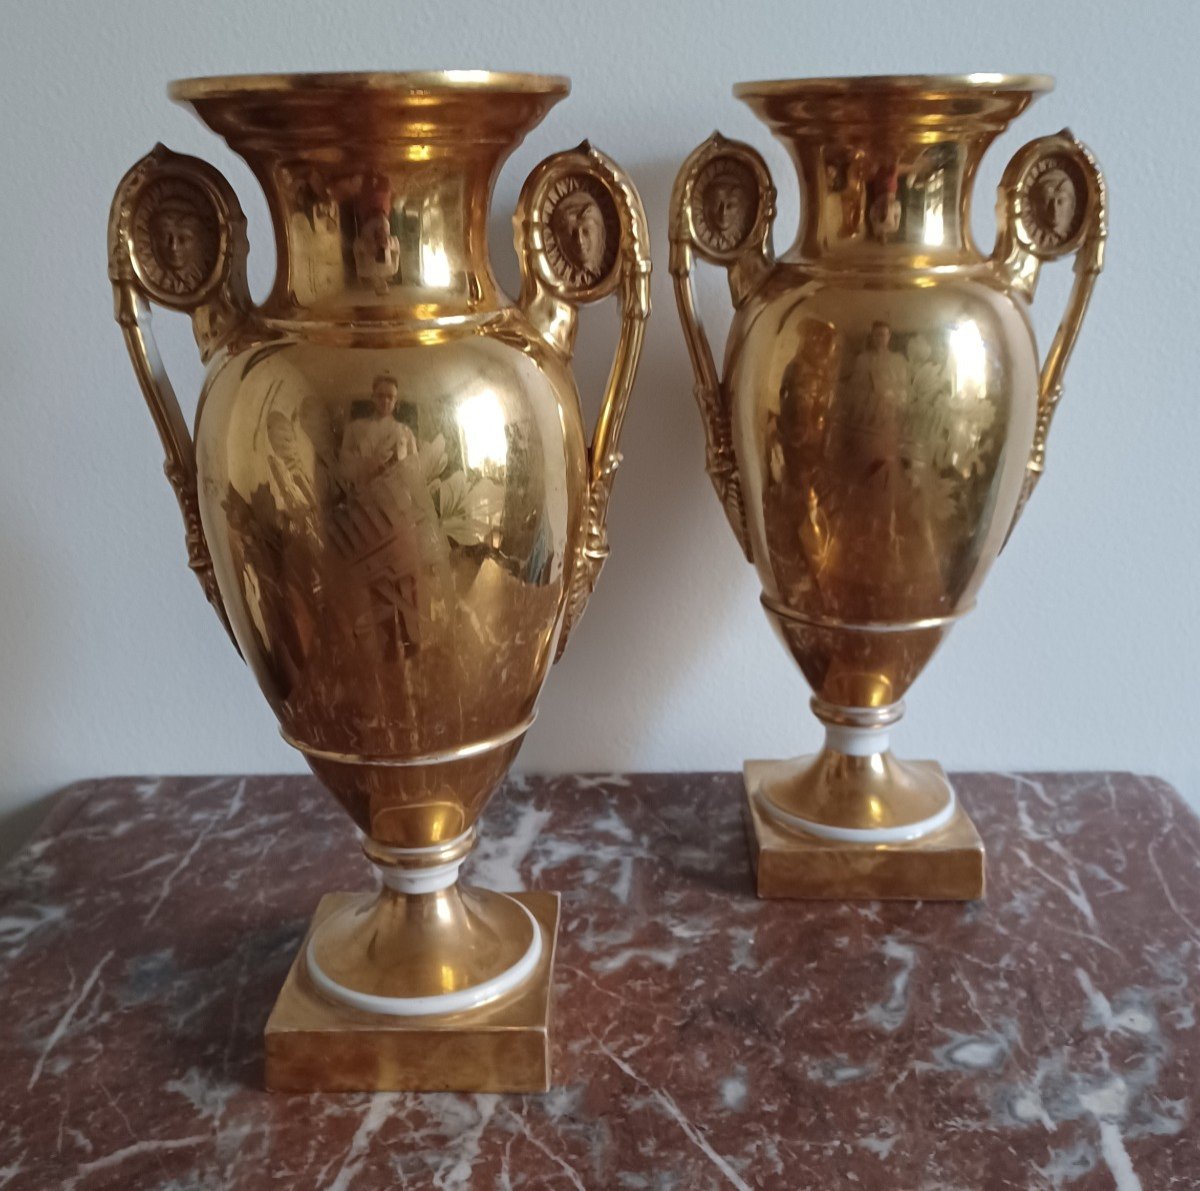 Paris - paire de vases romantiques - riche et fraîche dorure - Empire, Restauration